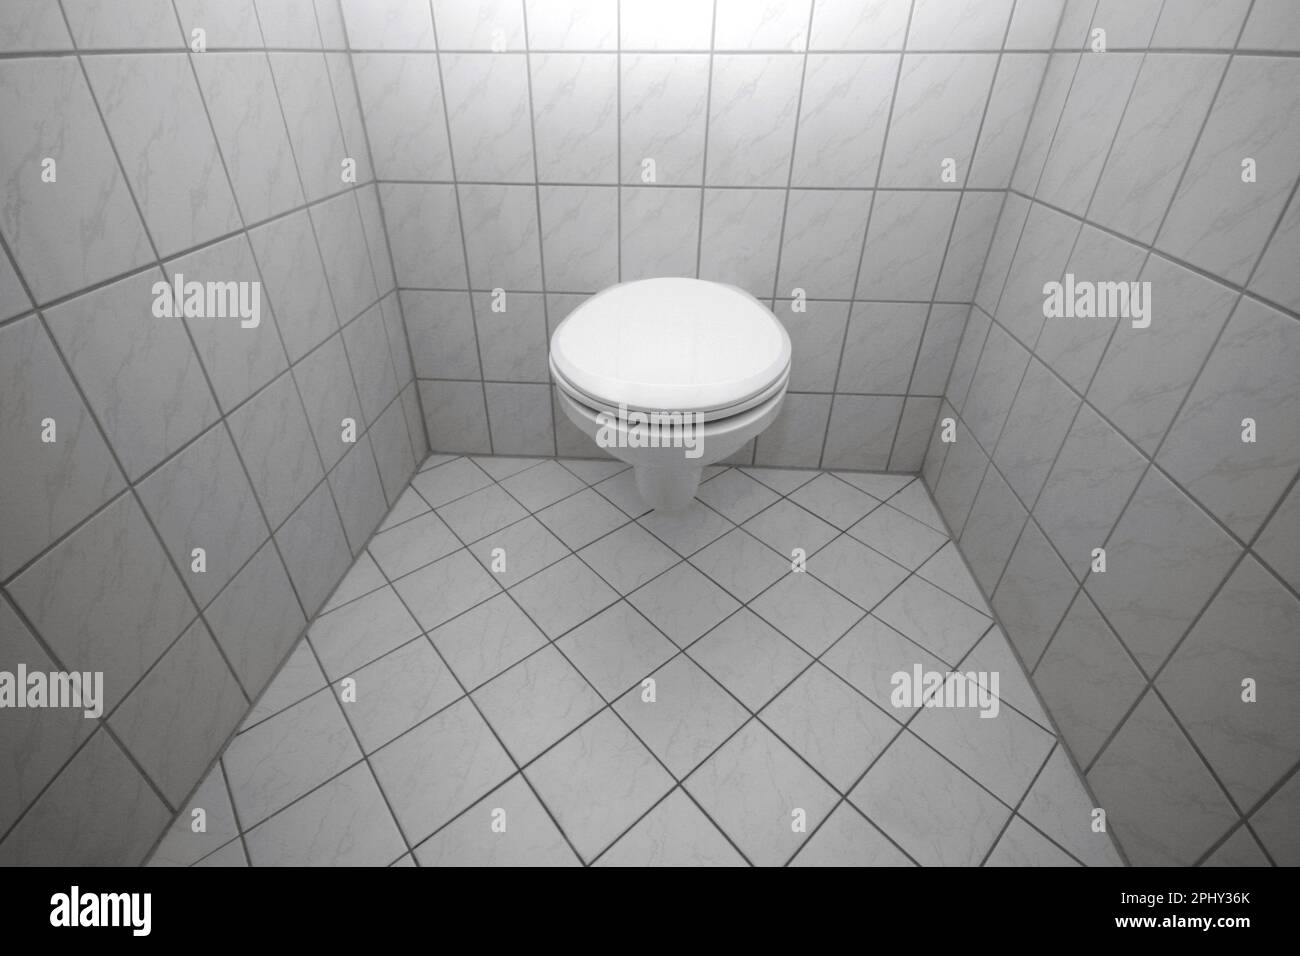 toilettes modernes au mur dans des toilettes carrelées de blanc Banque D'Images